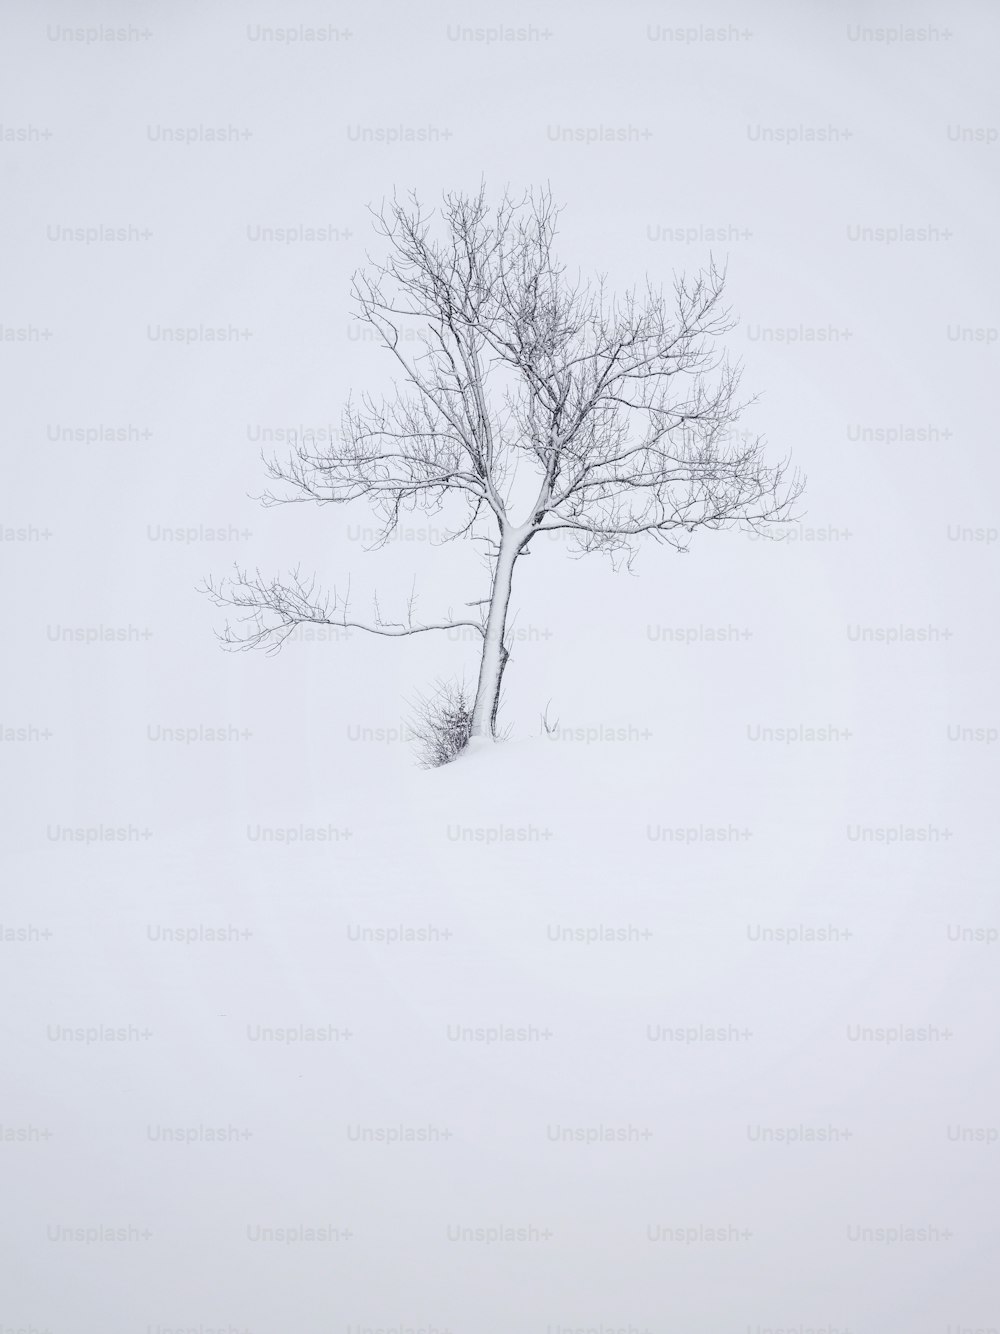 Un árbol solitario en medio de un campo nevado